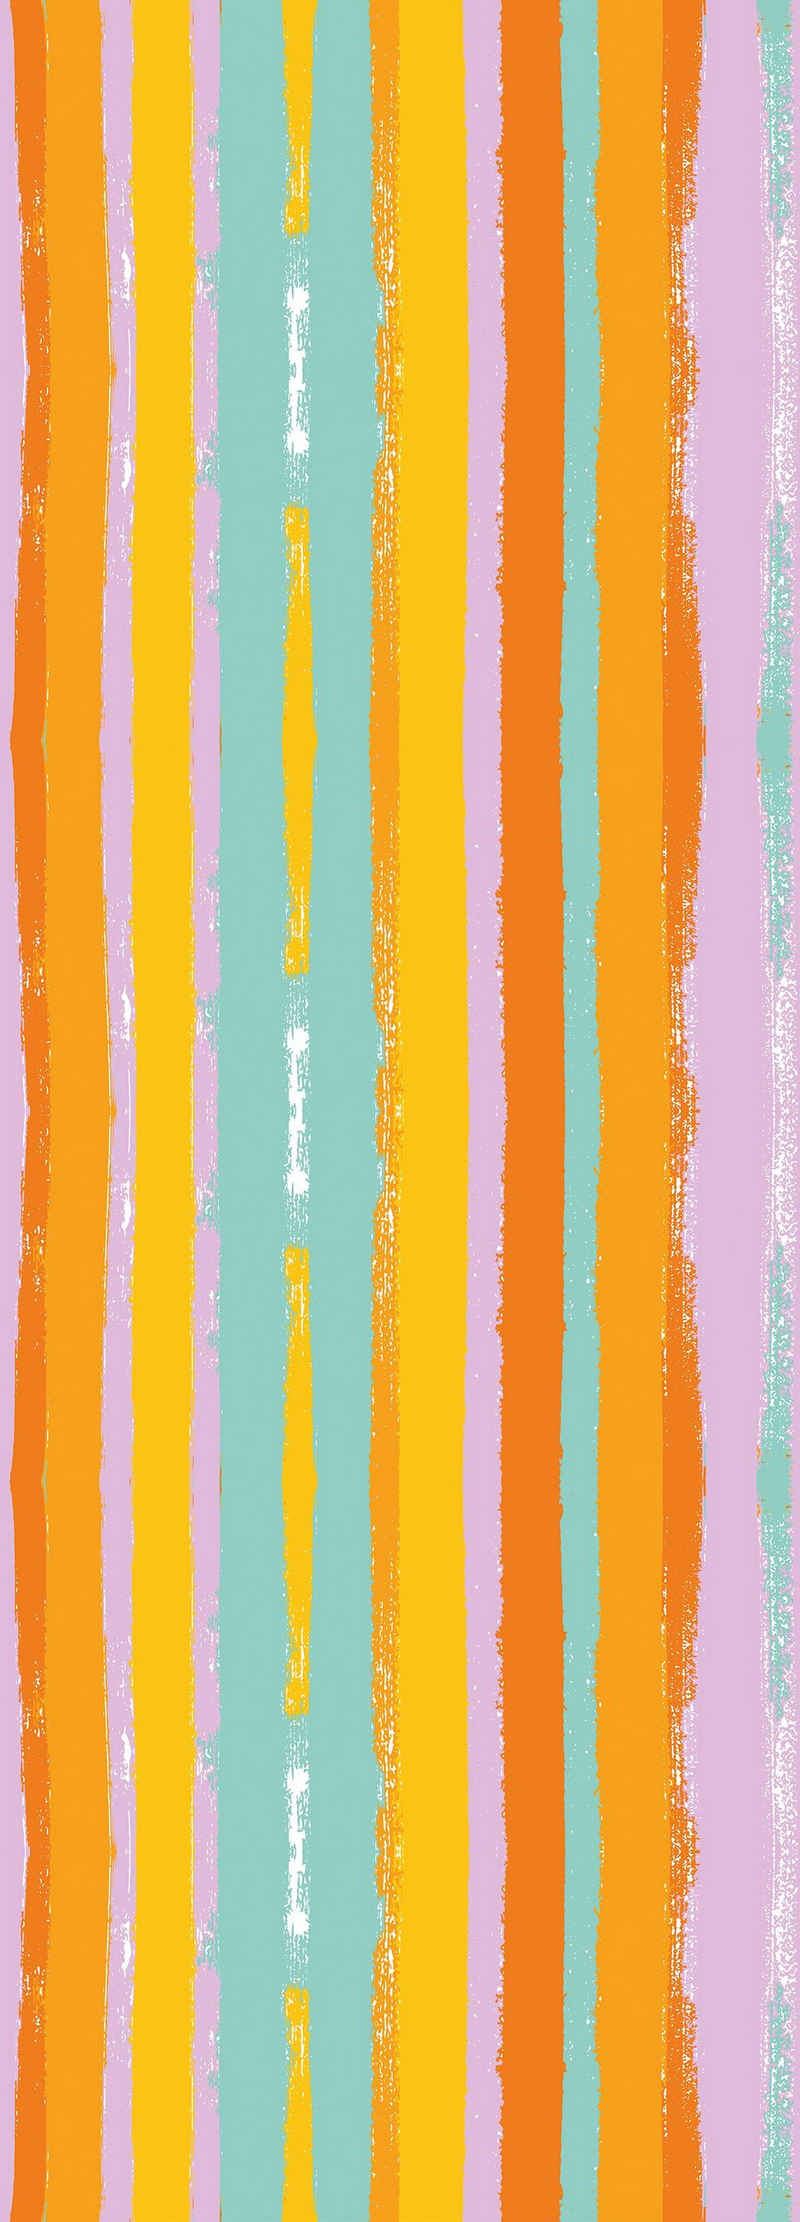 queence Vinyltapete Streifen-Bunt, Streifen, 90 x 250 cm, selbstklebend